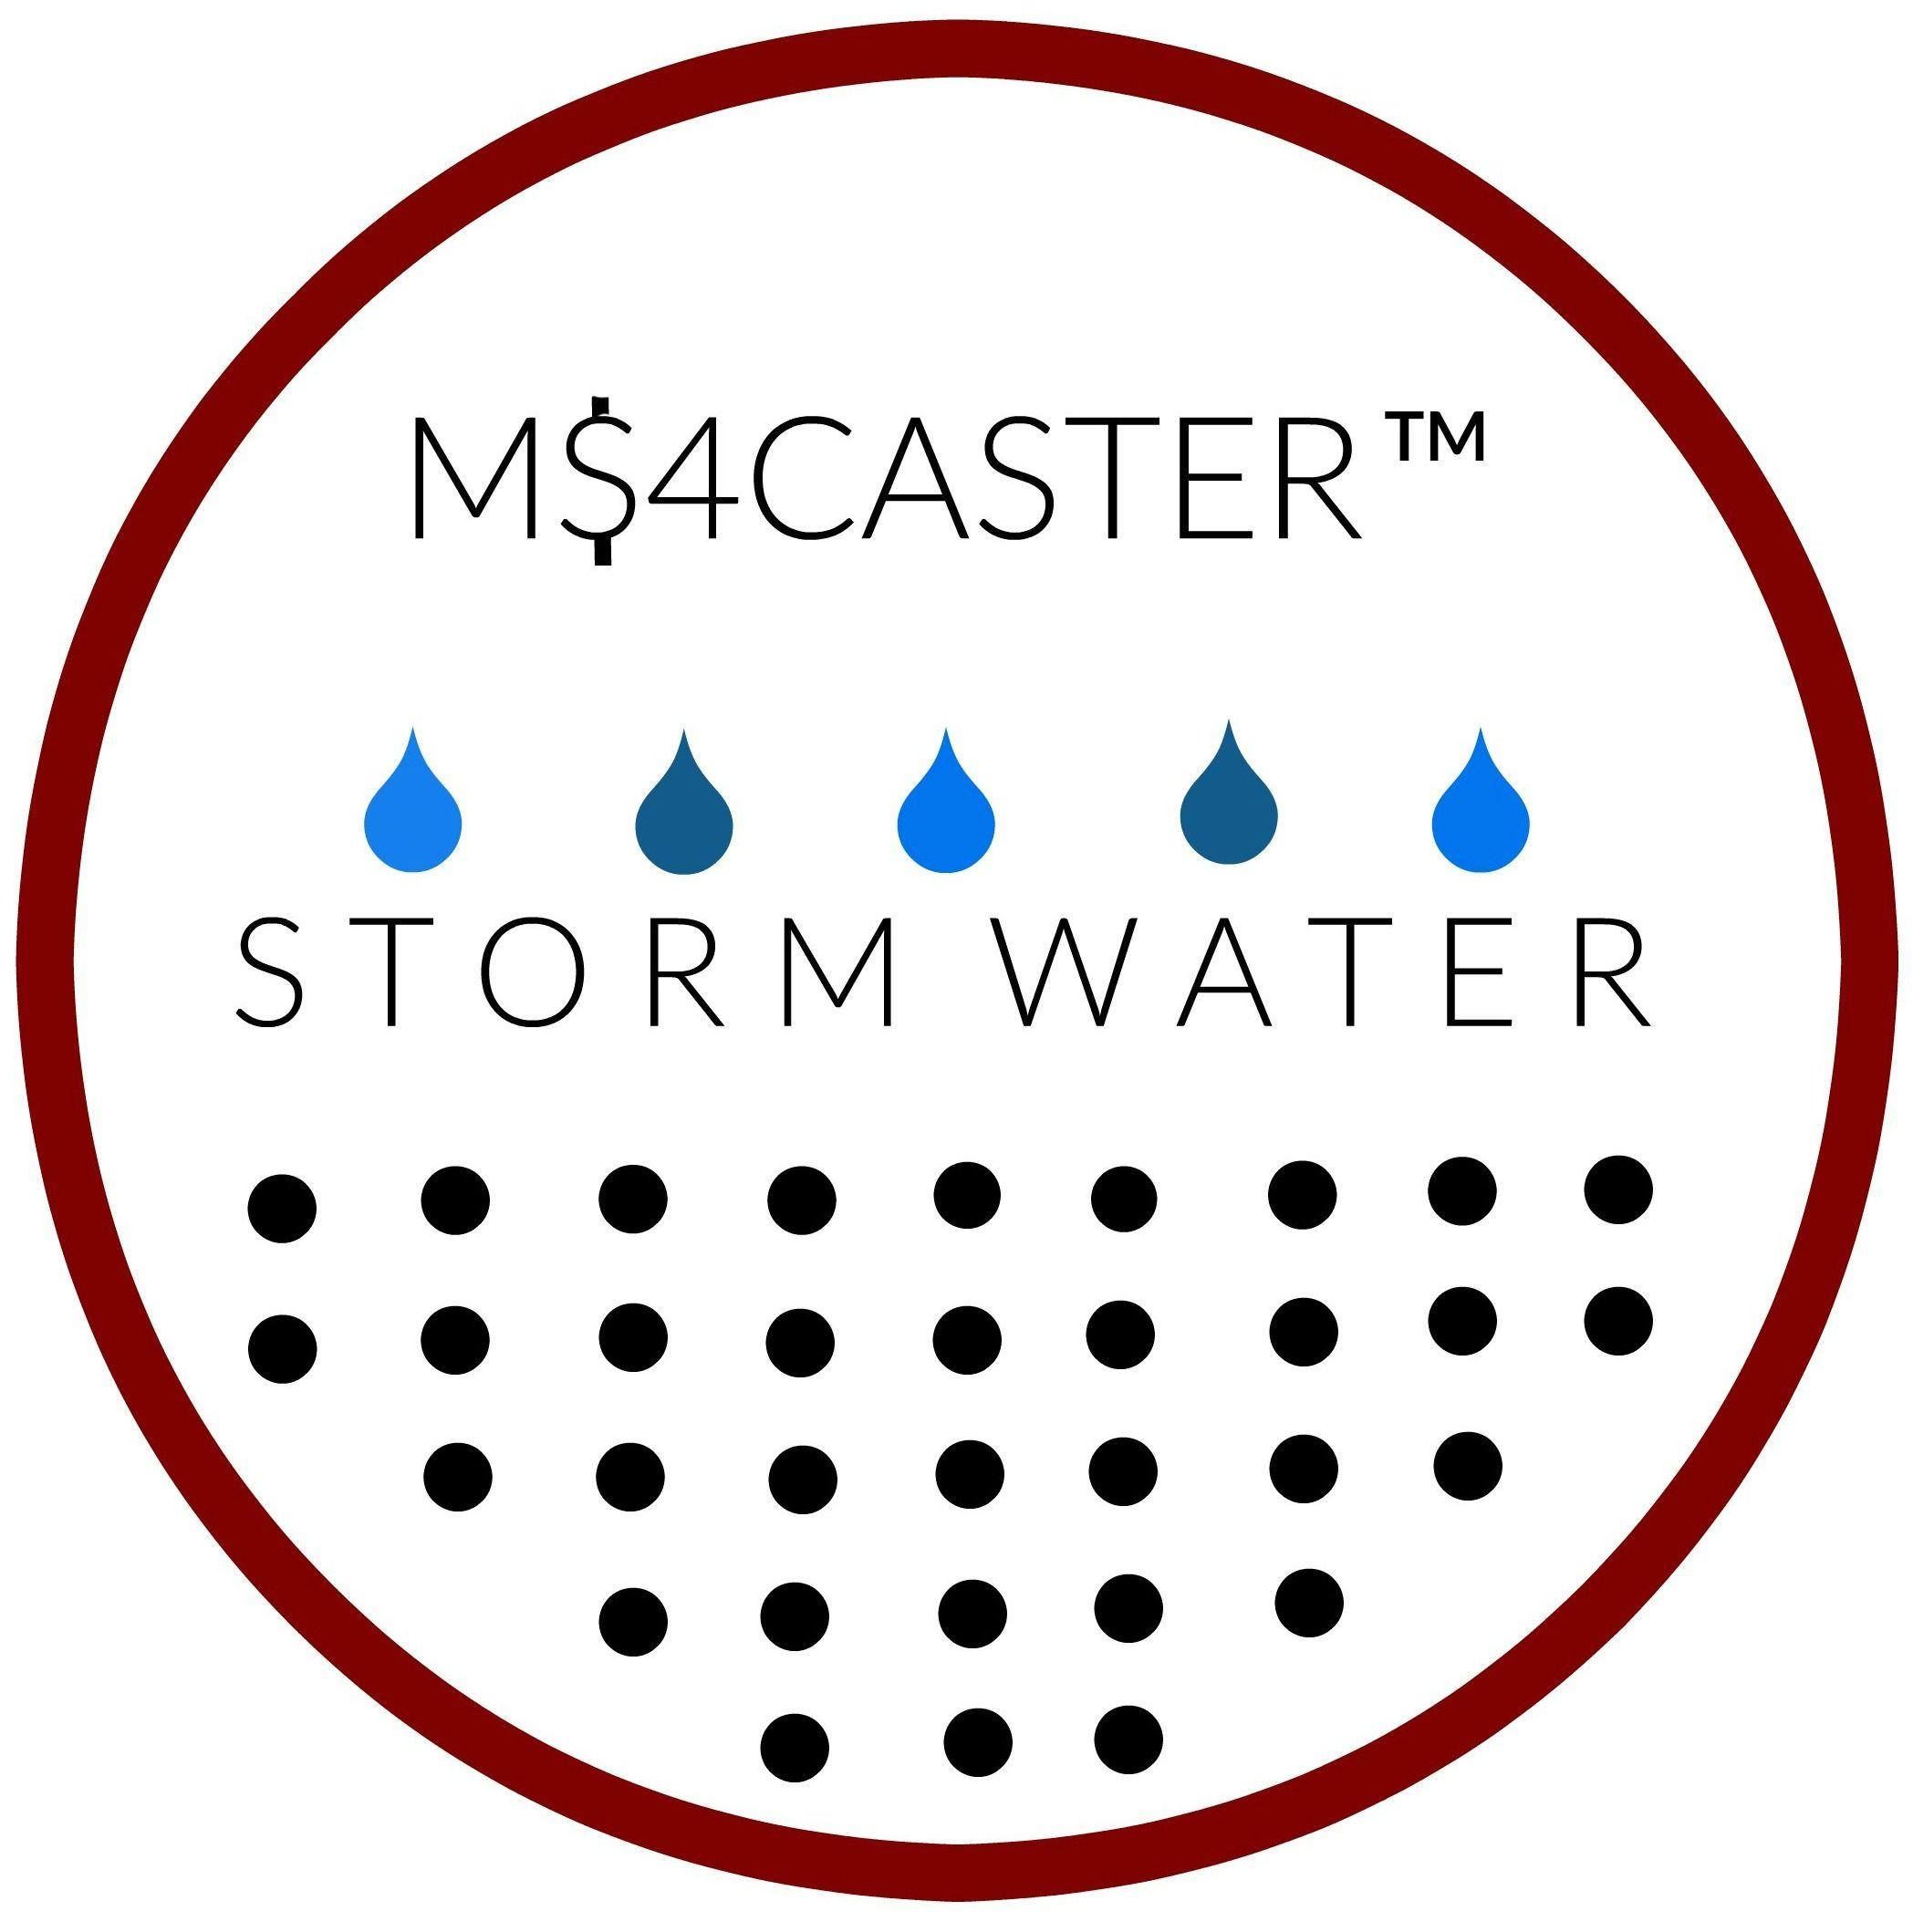 MS4 Logo - CEI's M$4CASTER | CEI